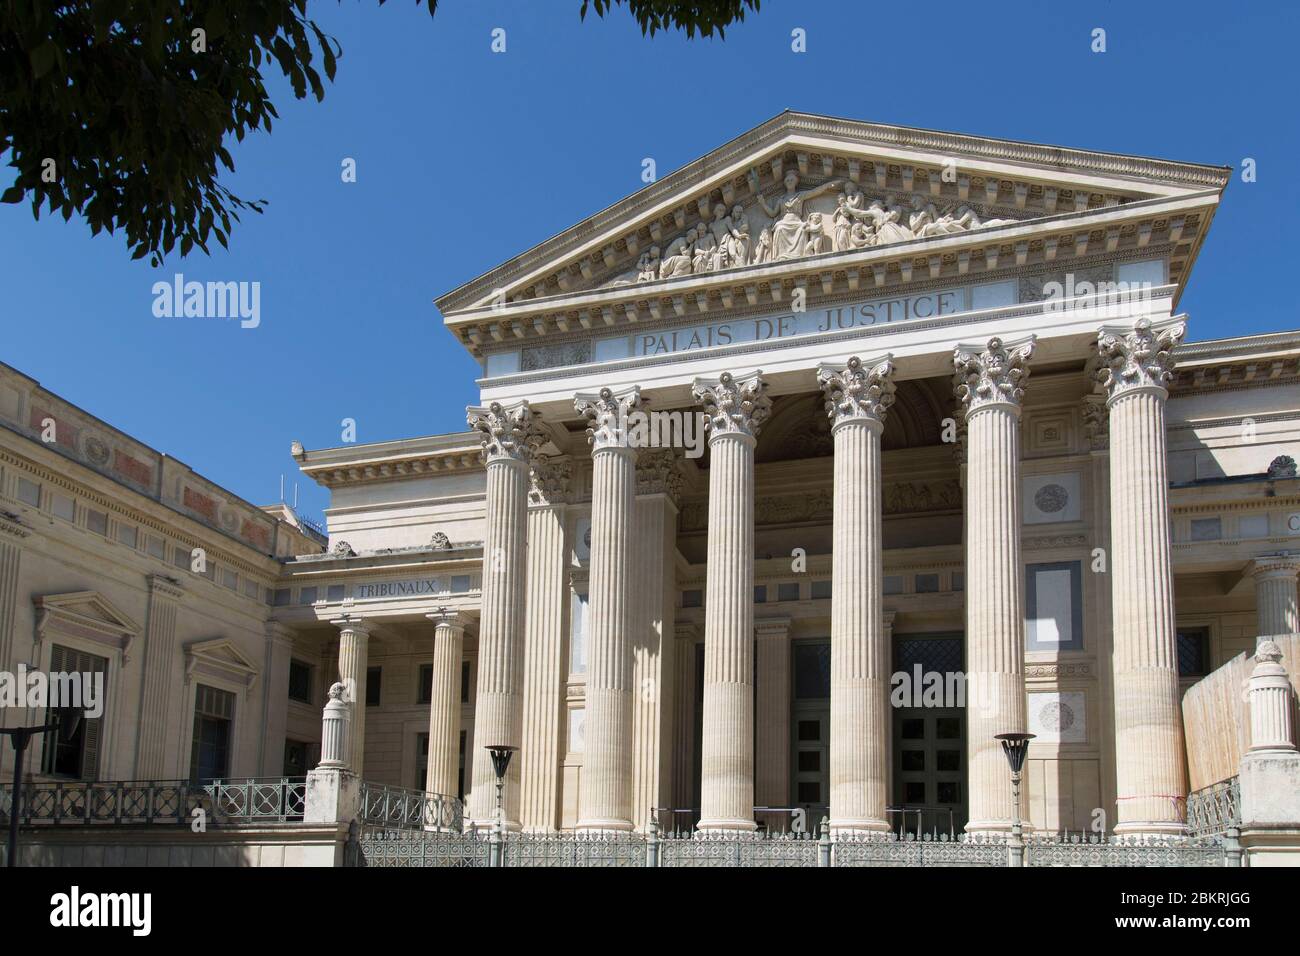 France, Gard, Nimes, Palais de justice Stock Photo